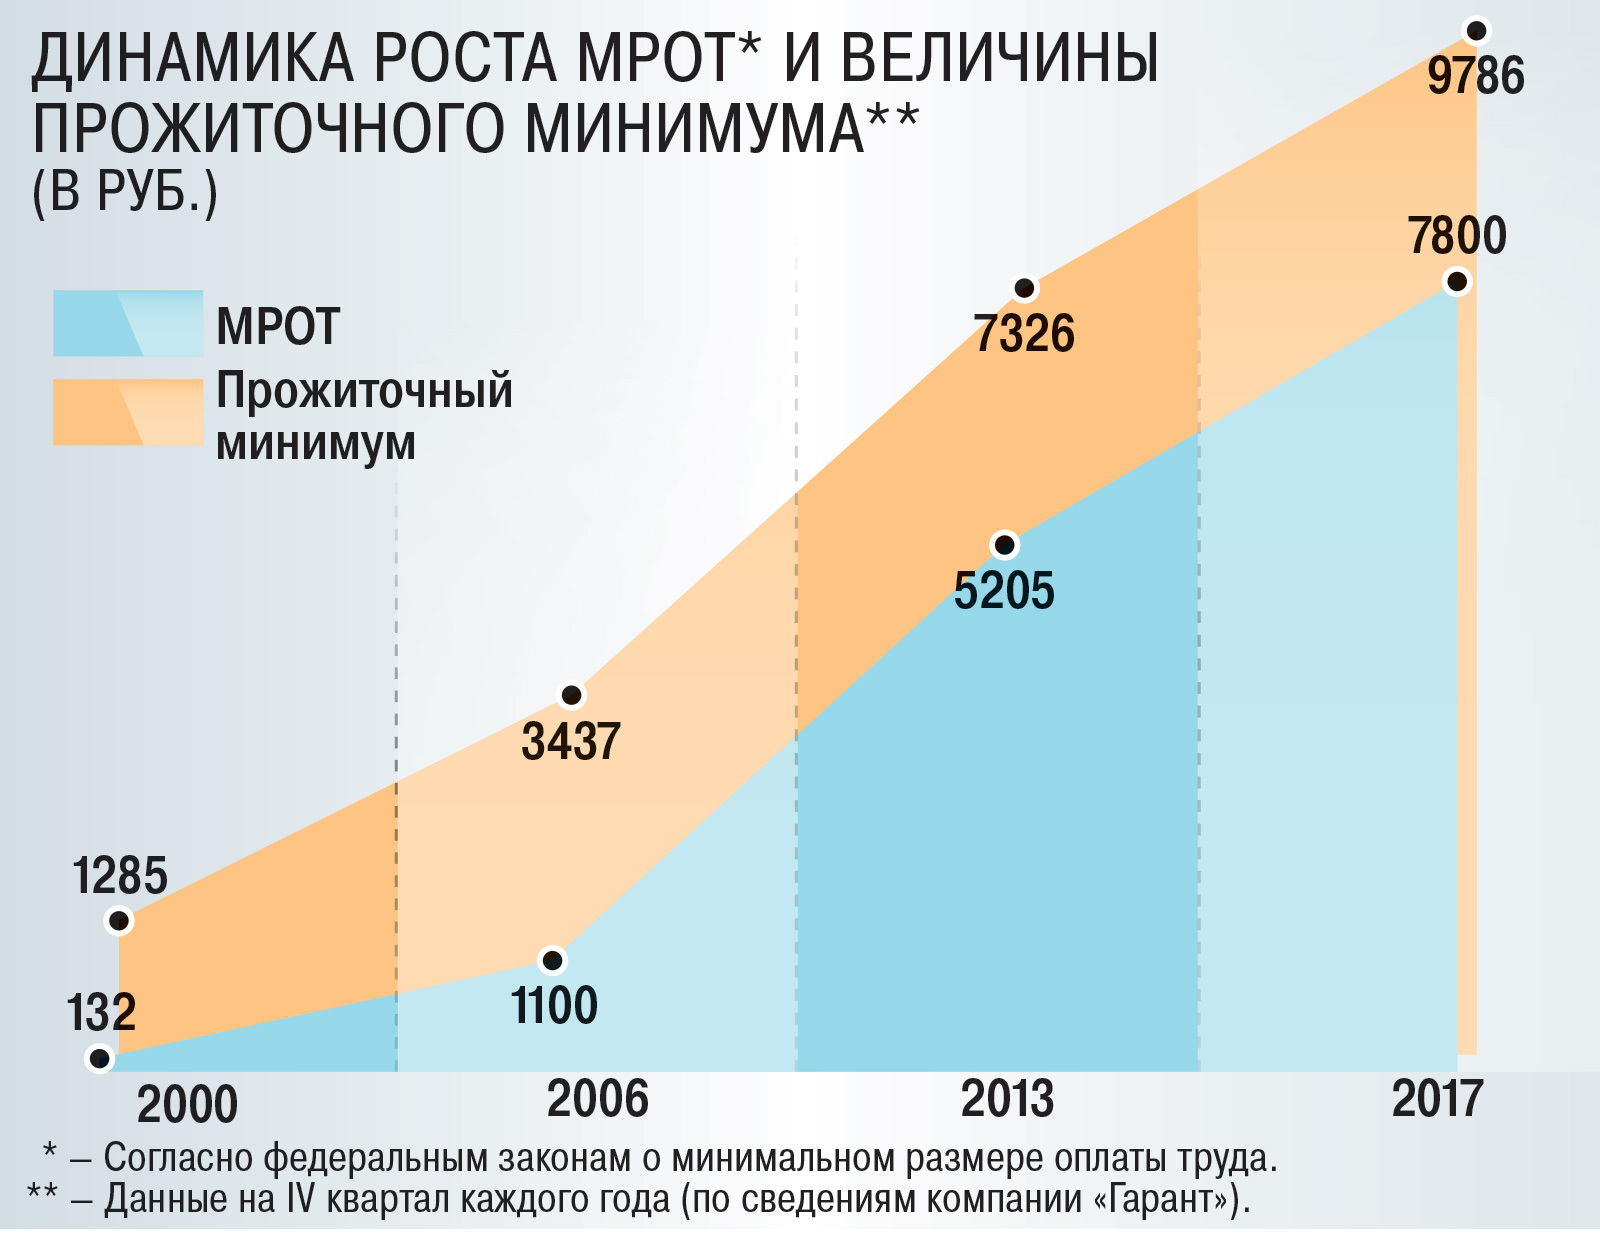 Минимальная заработная плата в субъектах. Рост прожиточного минимума в России. Динамика роста прожиточного минимума. МРОТ. МРОТ динамика по годам.